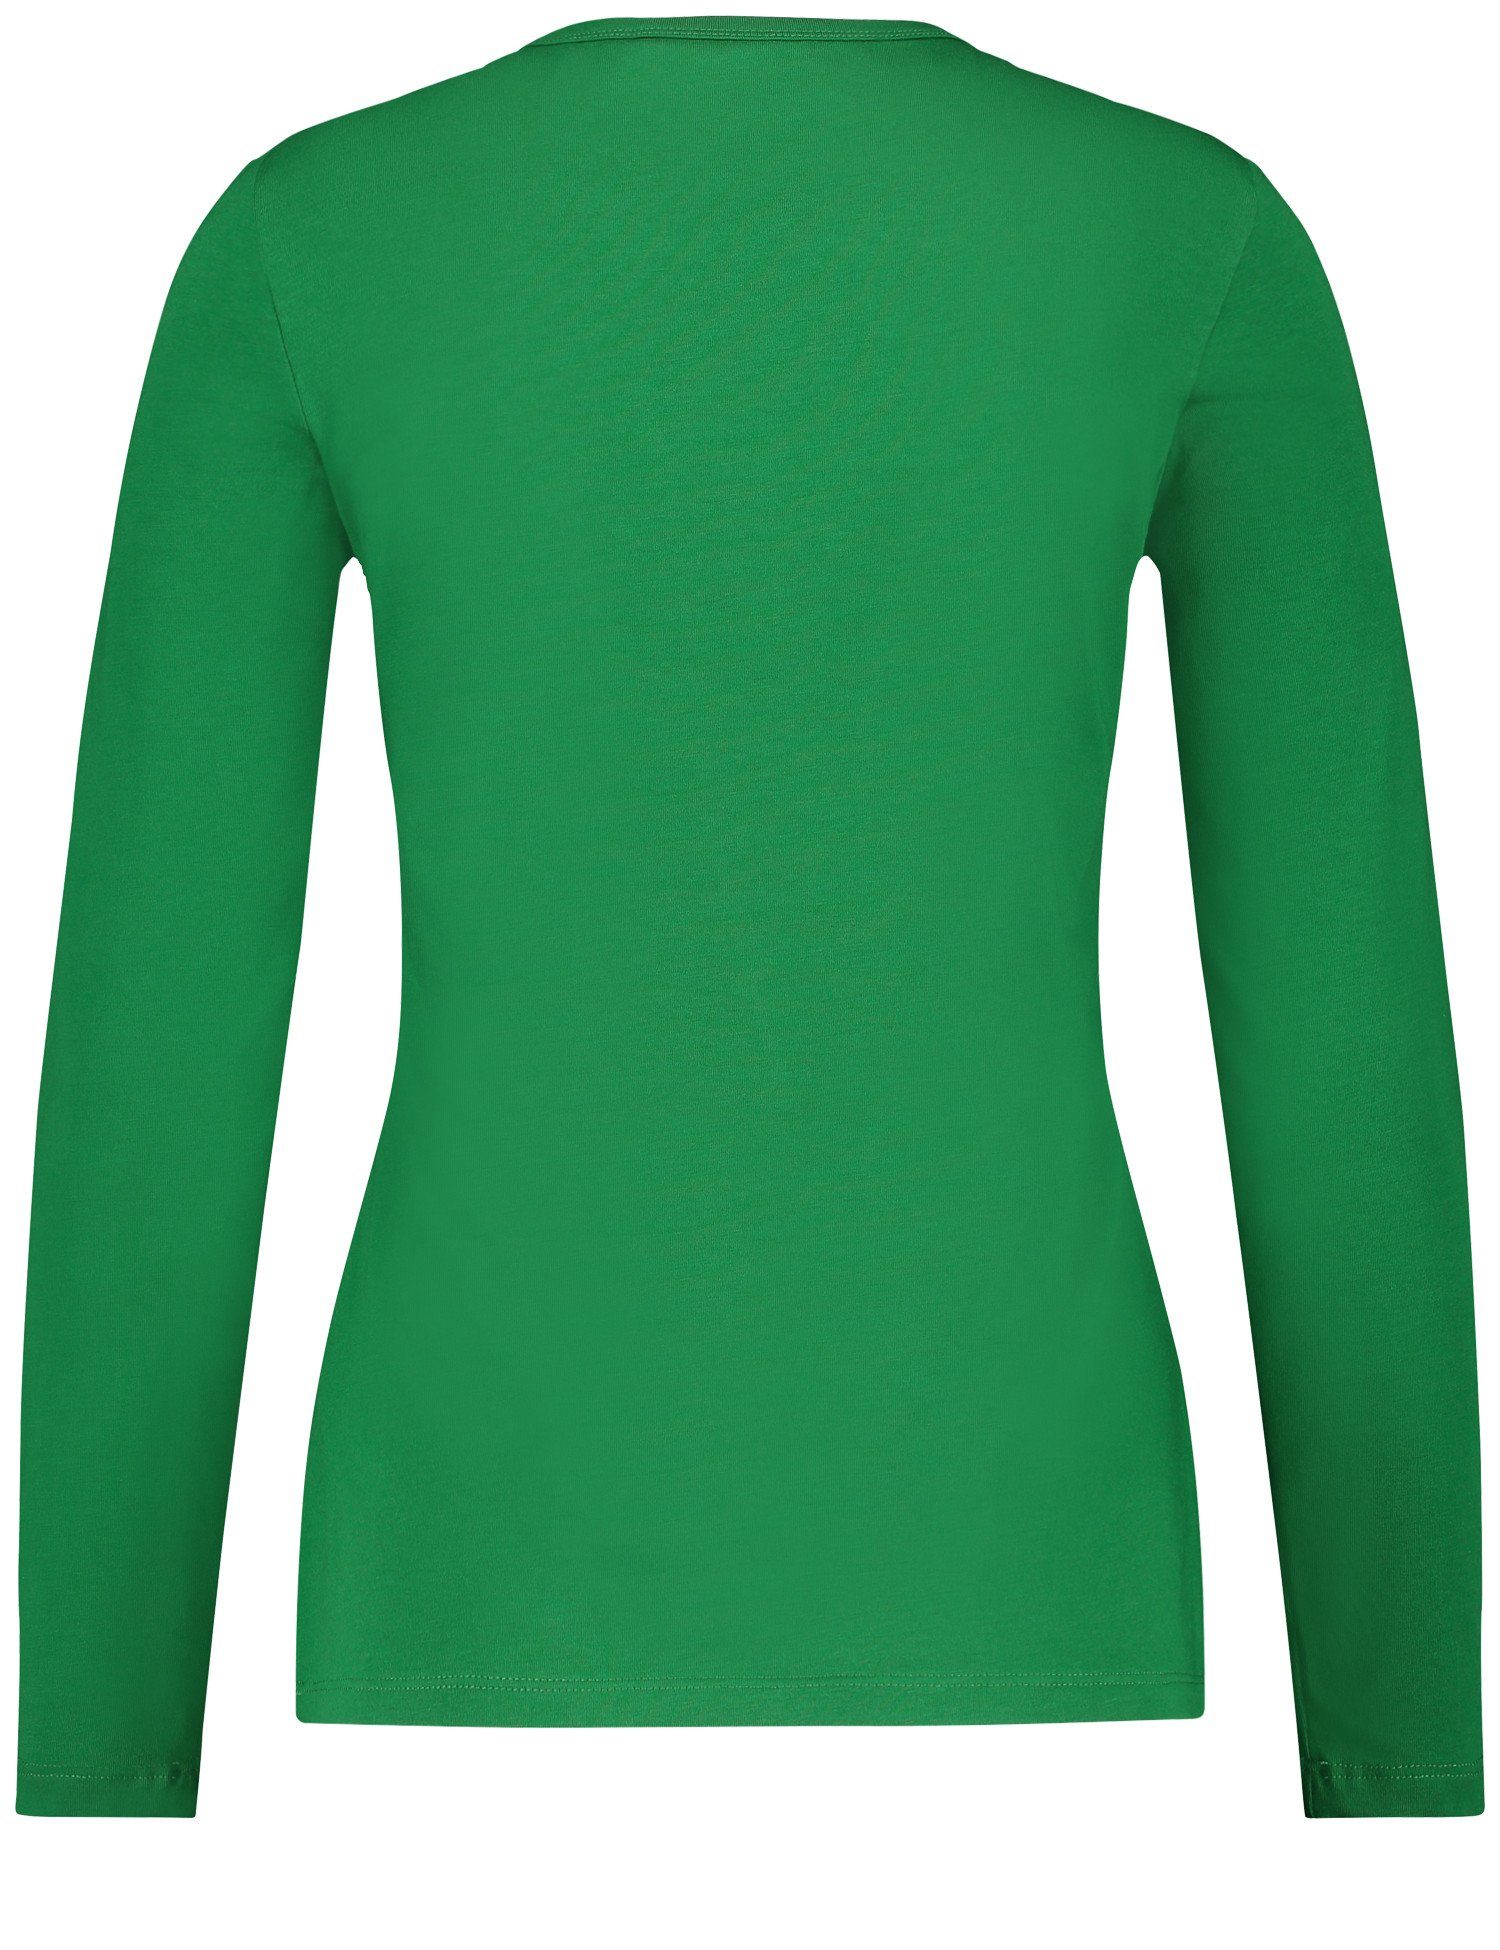 Basic Langarmshirt WEBER GERRY Green Langarmshirt Stretchkomfort Bright mit